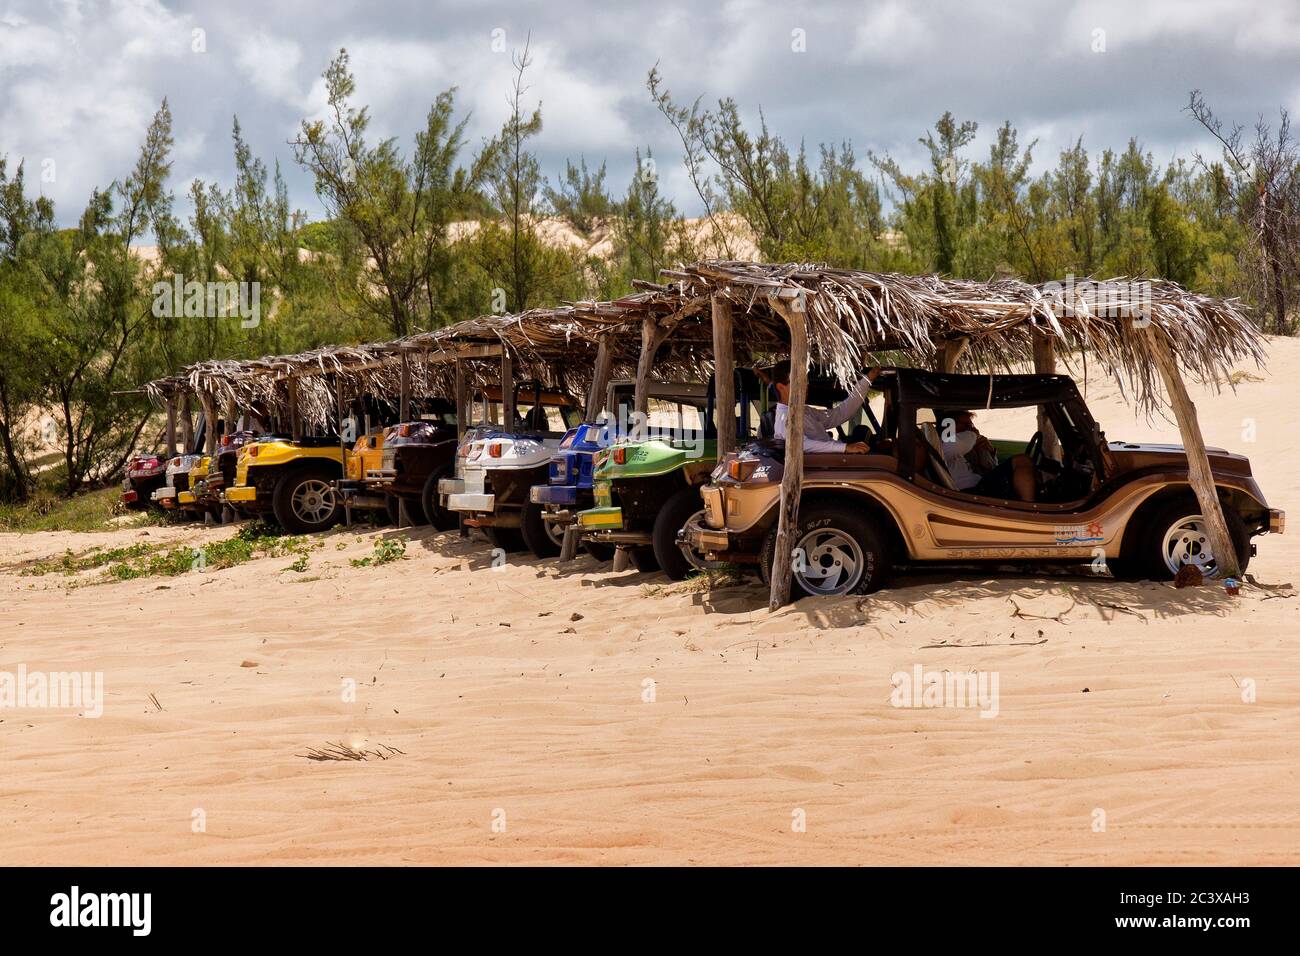 Dunes de Genipabu et promenade en lagune, Natal, Brésil. Un paradis tropical pour les vacances, pour l'aventure et la détente. Banque D'Images